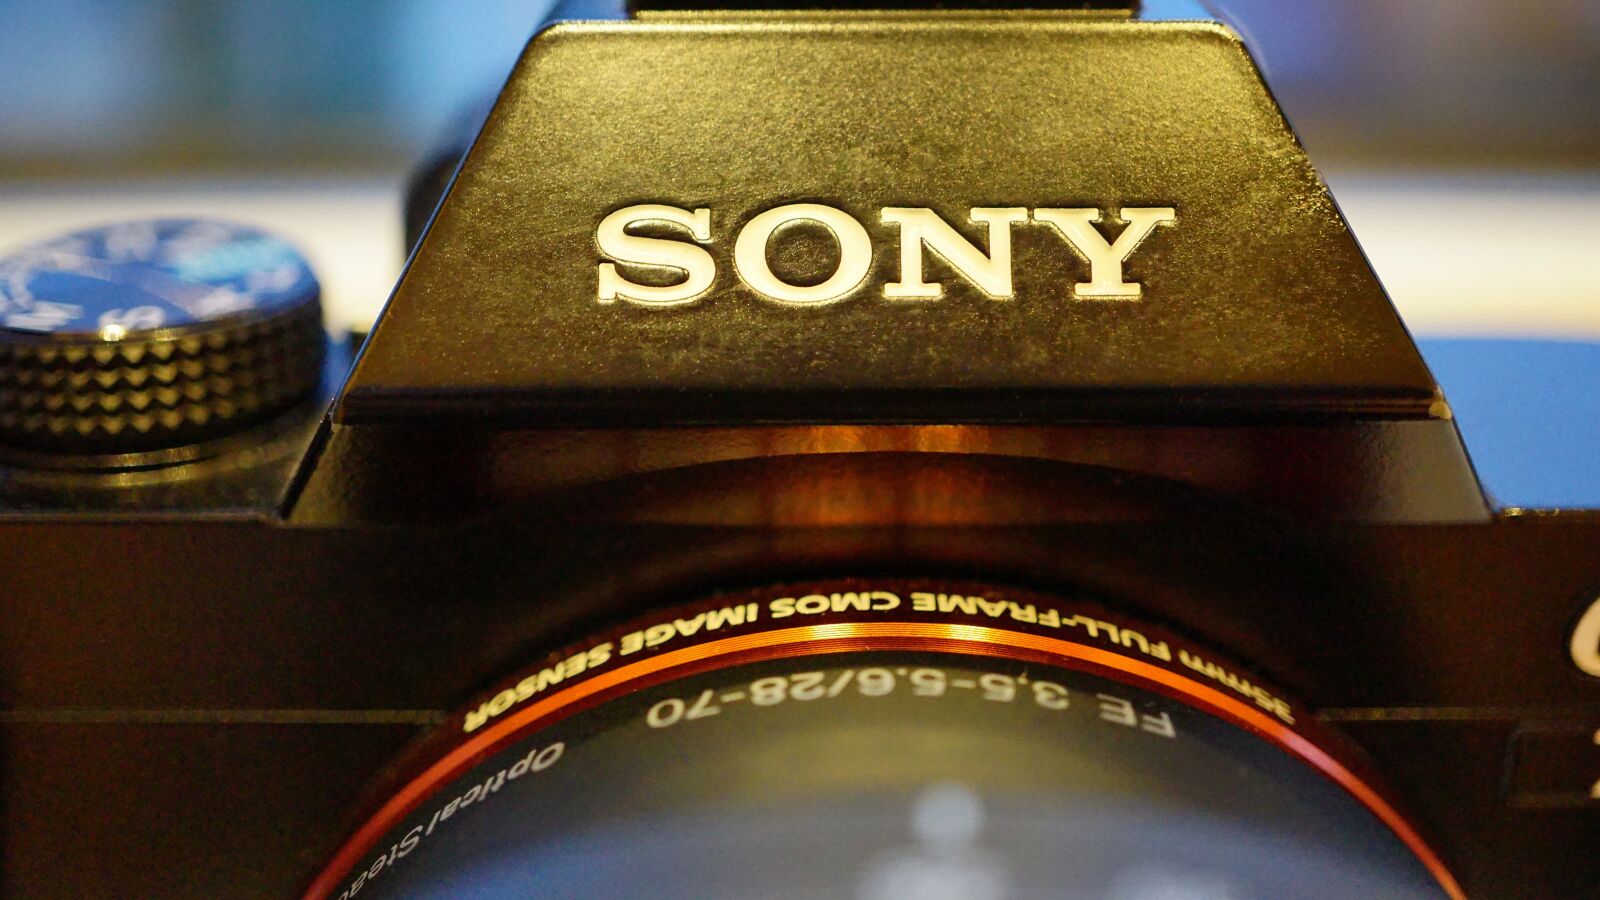 Sony E 30mm F3.5 Macro sample photo. Sony, camera, digital photography